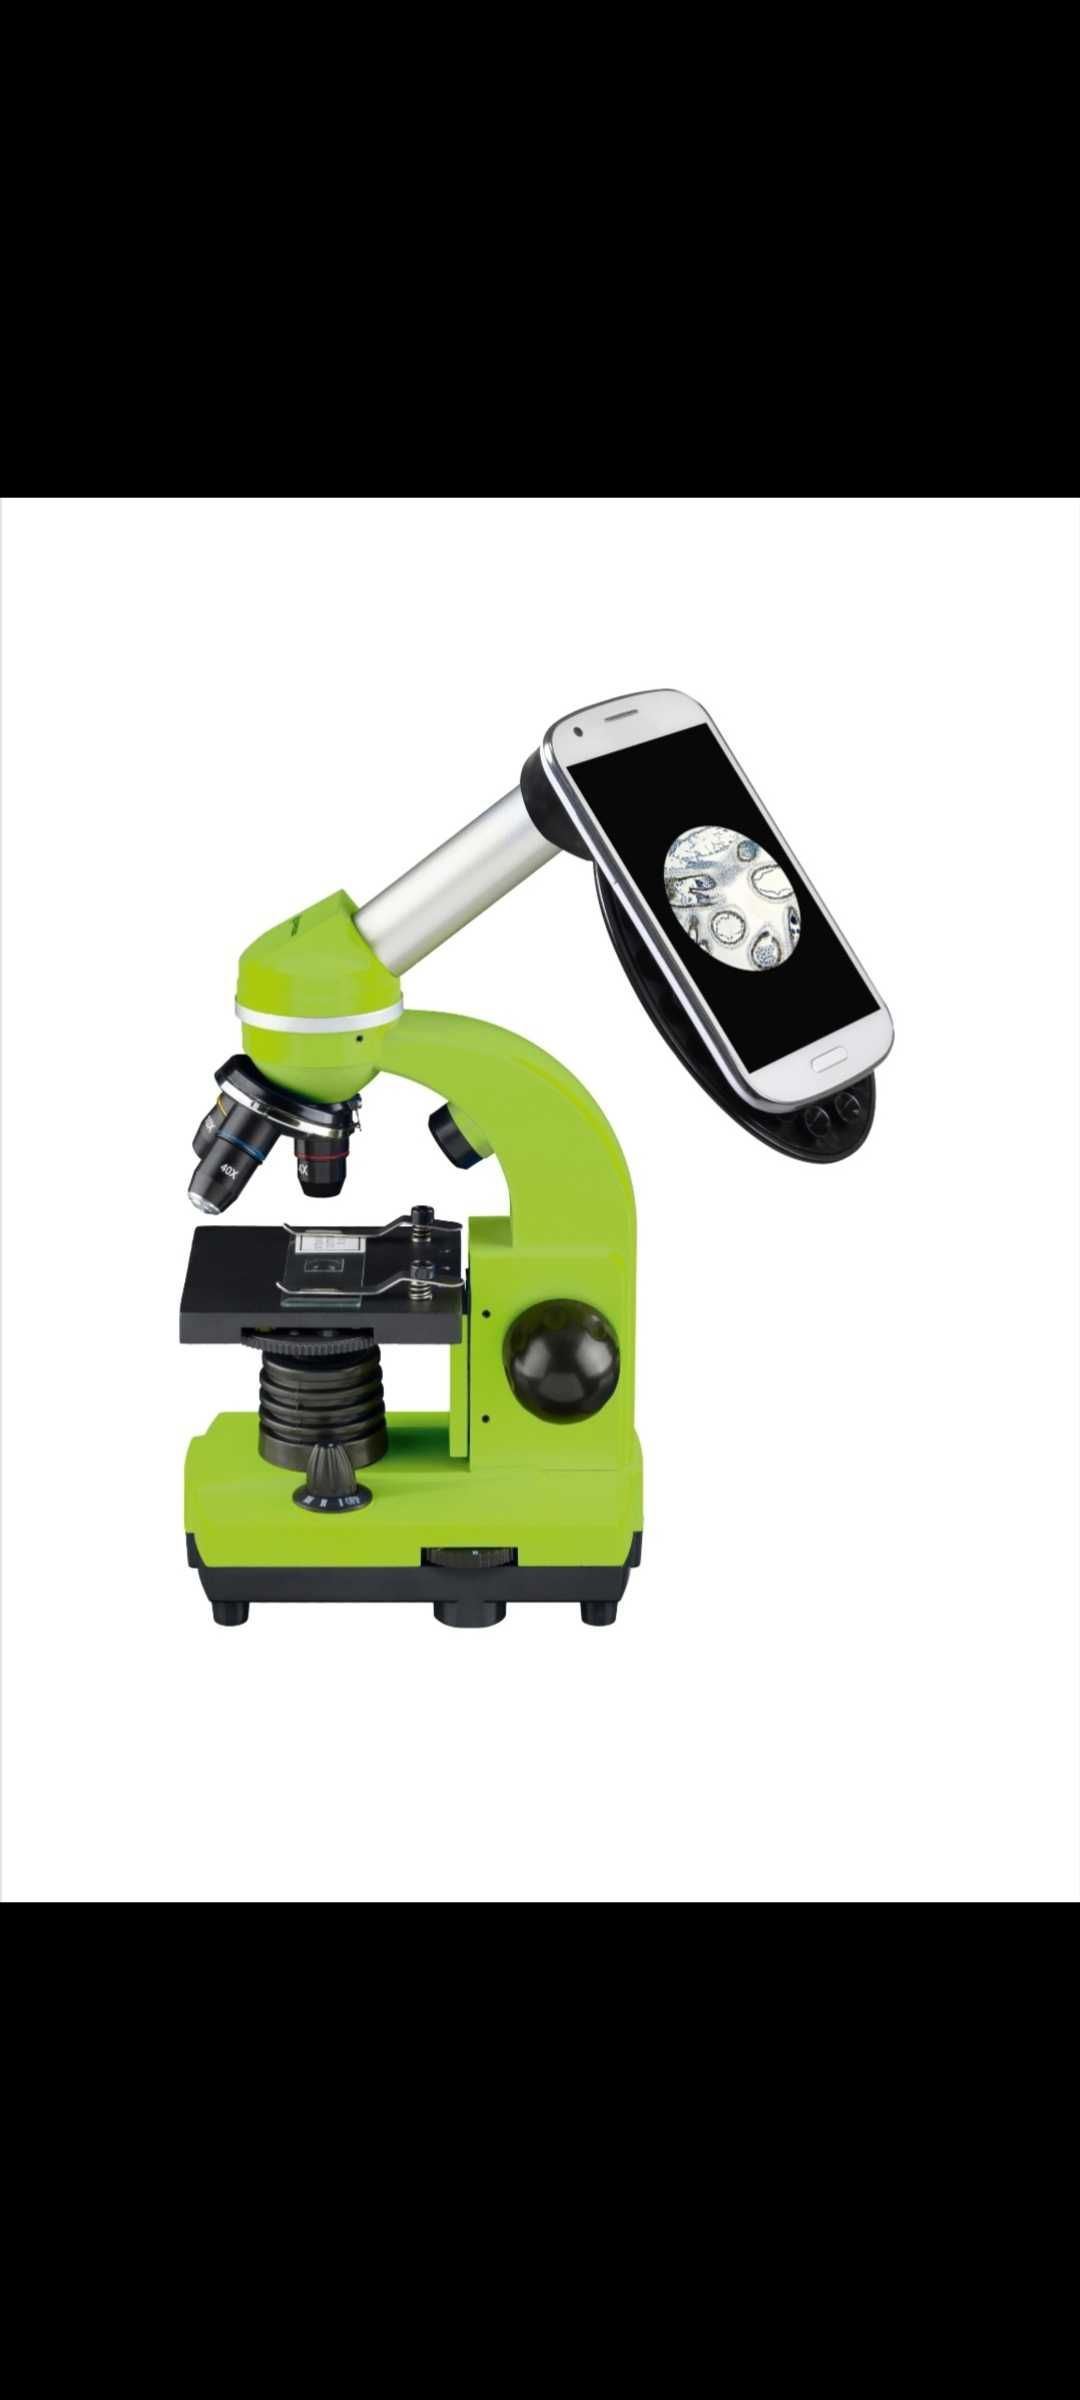 Vand microscop pentru copii 5-16 ani